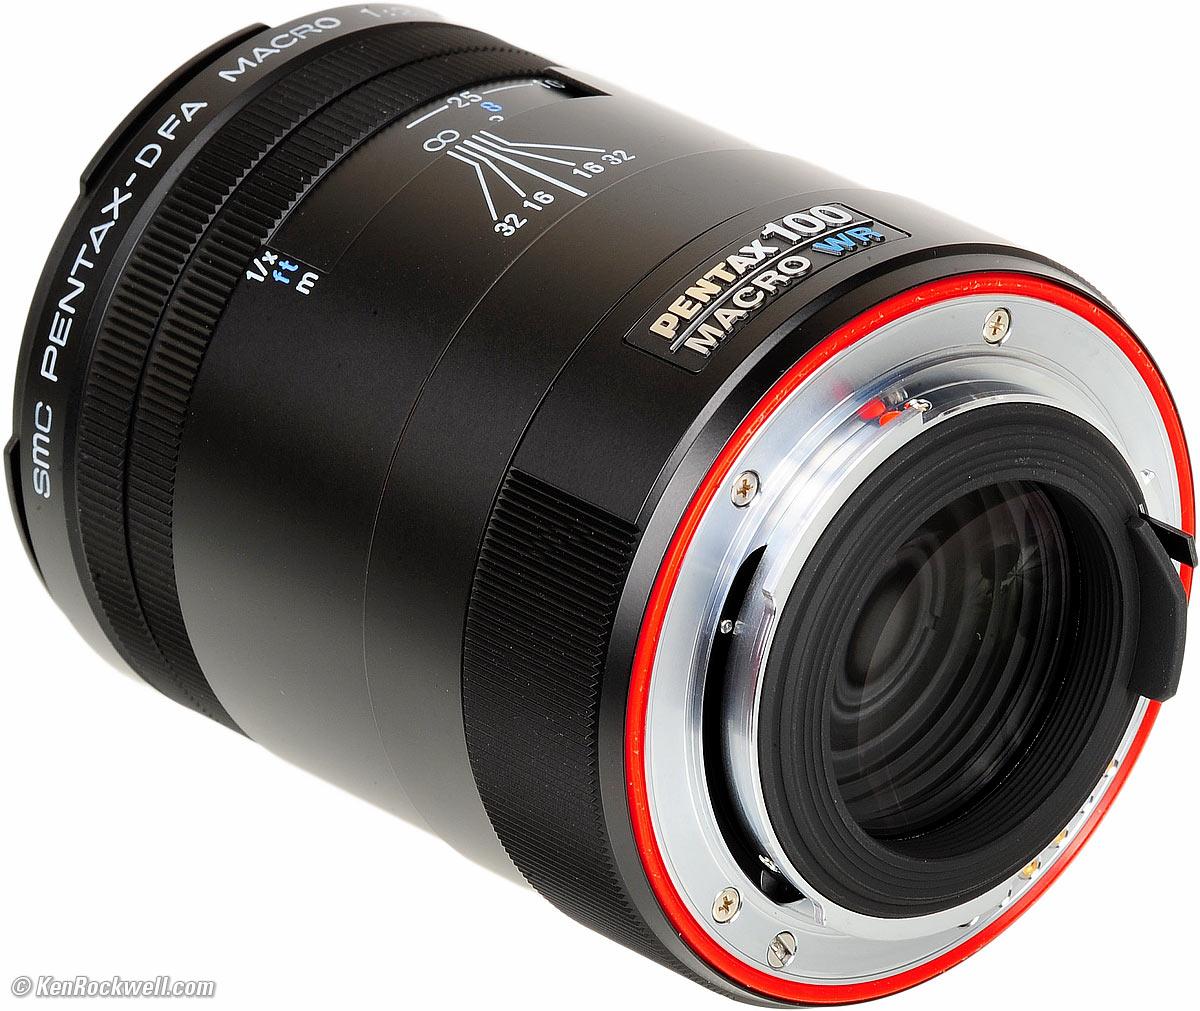 カメラ レンズ(単焦点) Pentax 100mm f/2.8 D FA WR Review